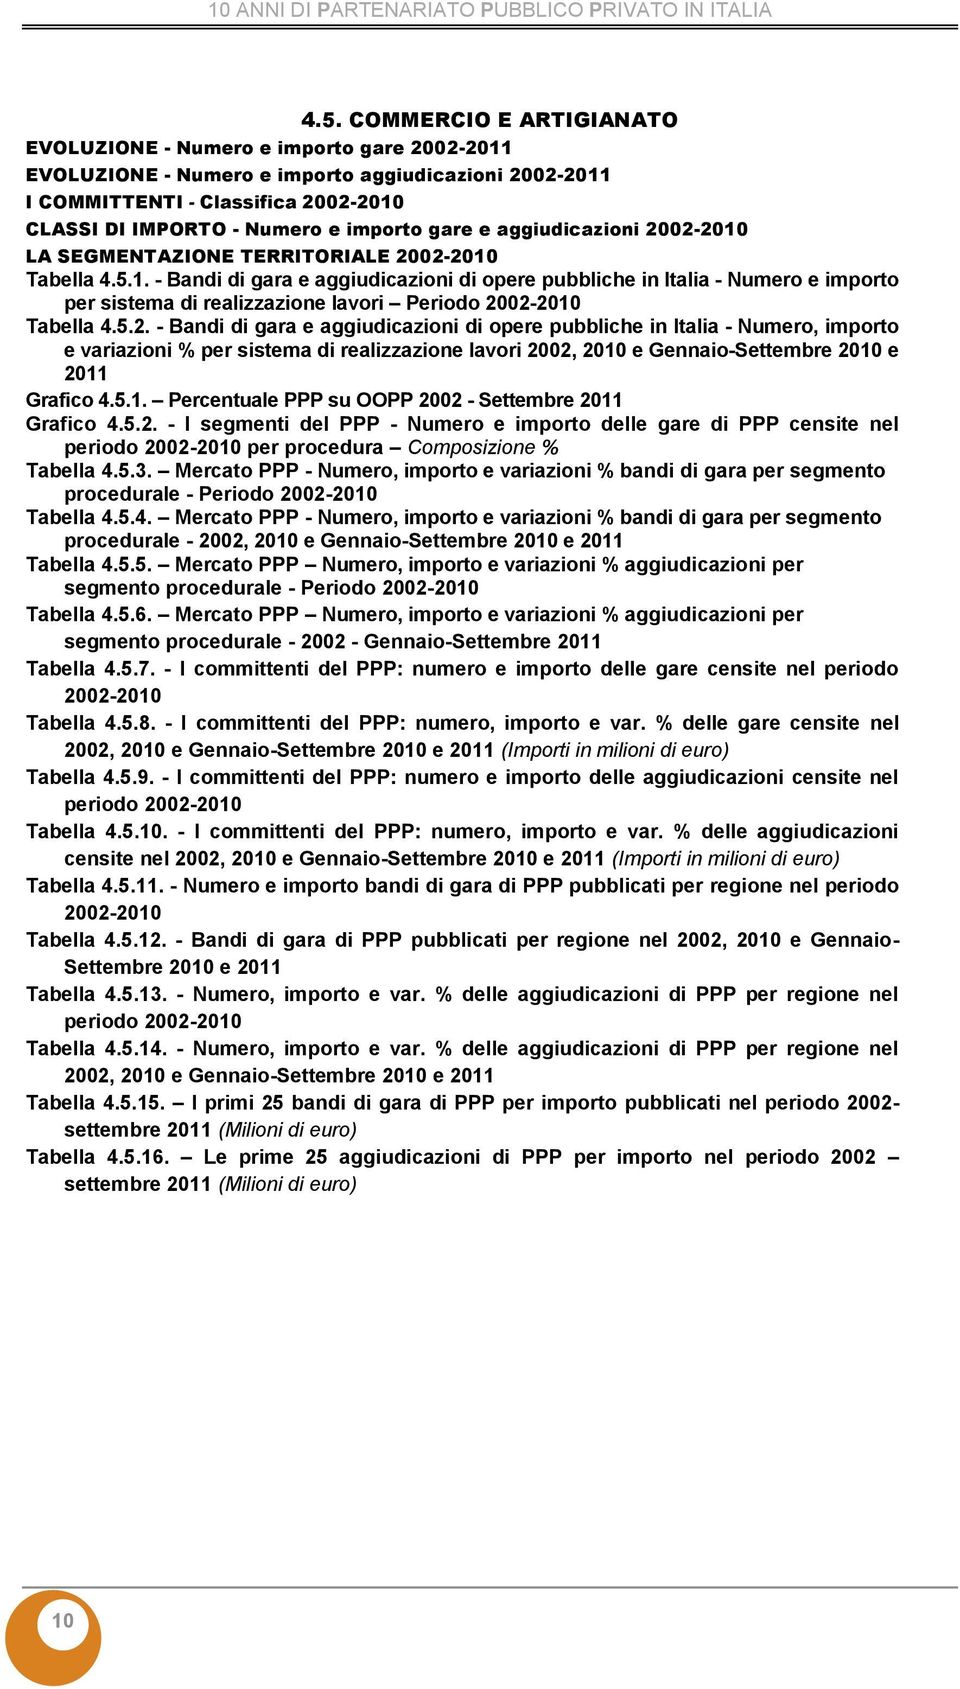 - Bandi di gara e aggiudicazioni di opere pubbliche in Italia - Numero, importo Grafico 4.5.1. Percentuale PPP su OOPP 20